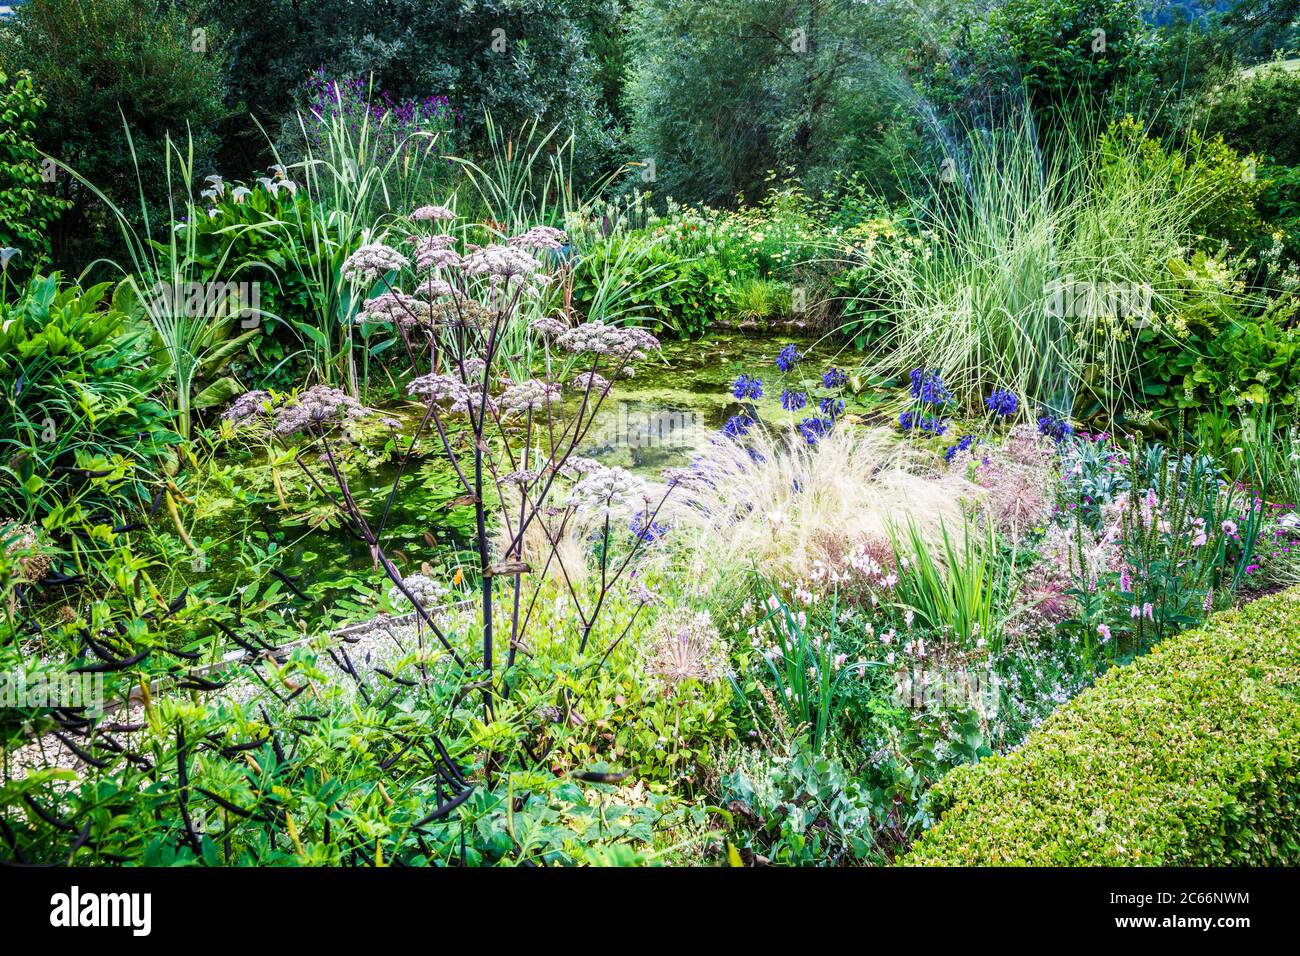 Gravel path through lush garden growth leading to a pond. Stock Photo